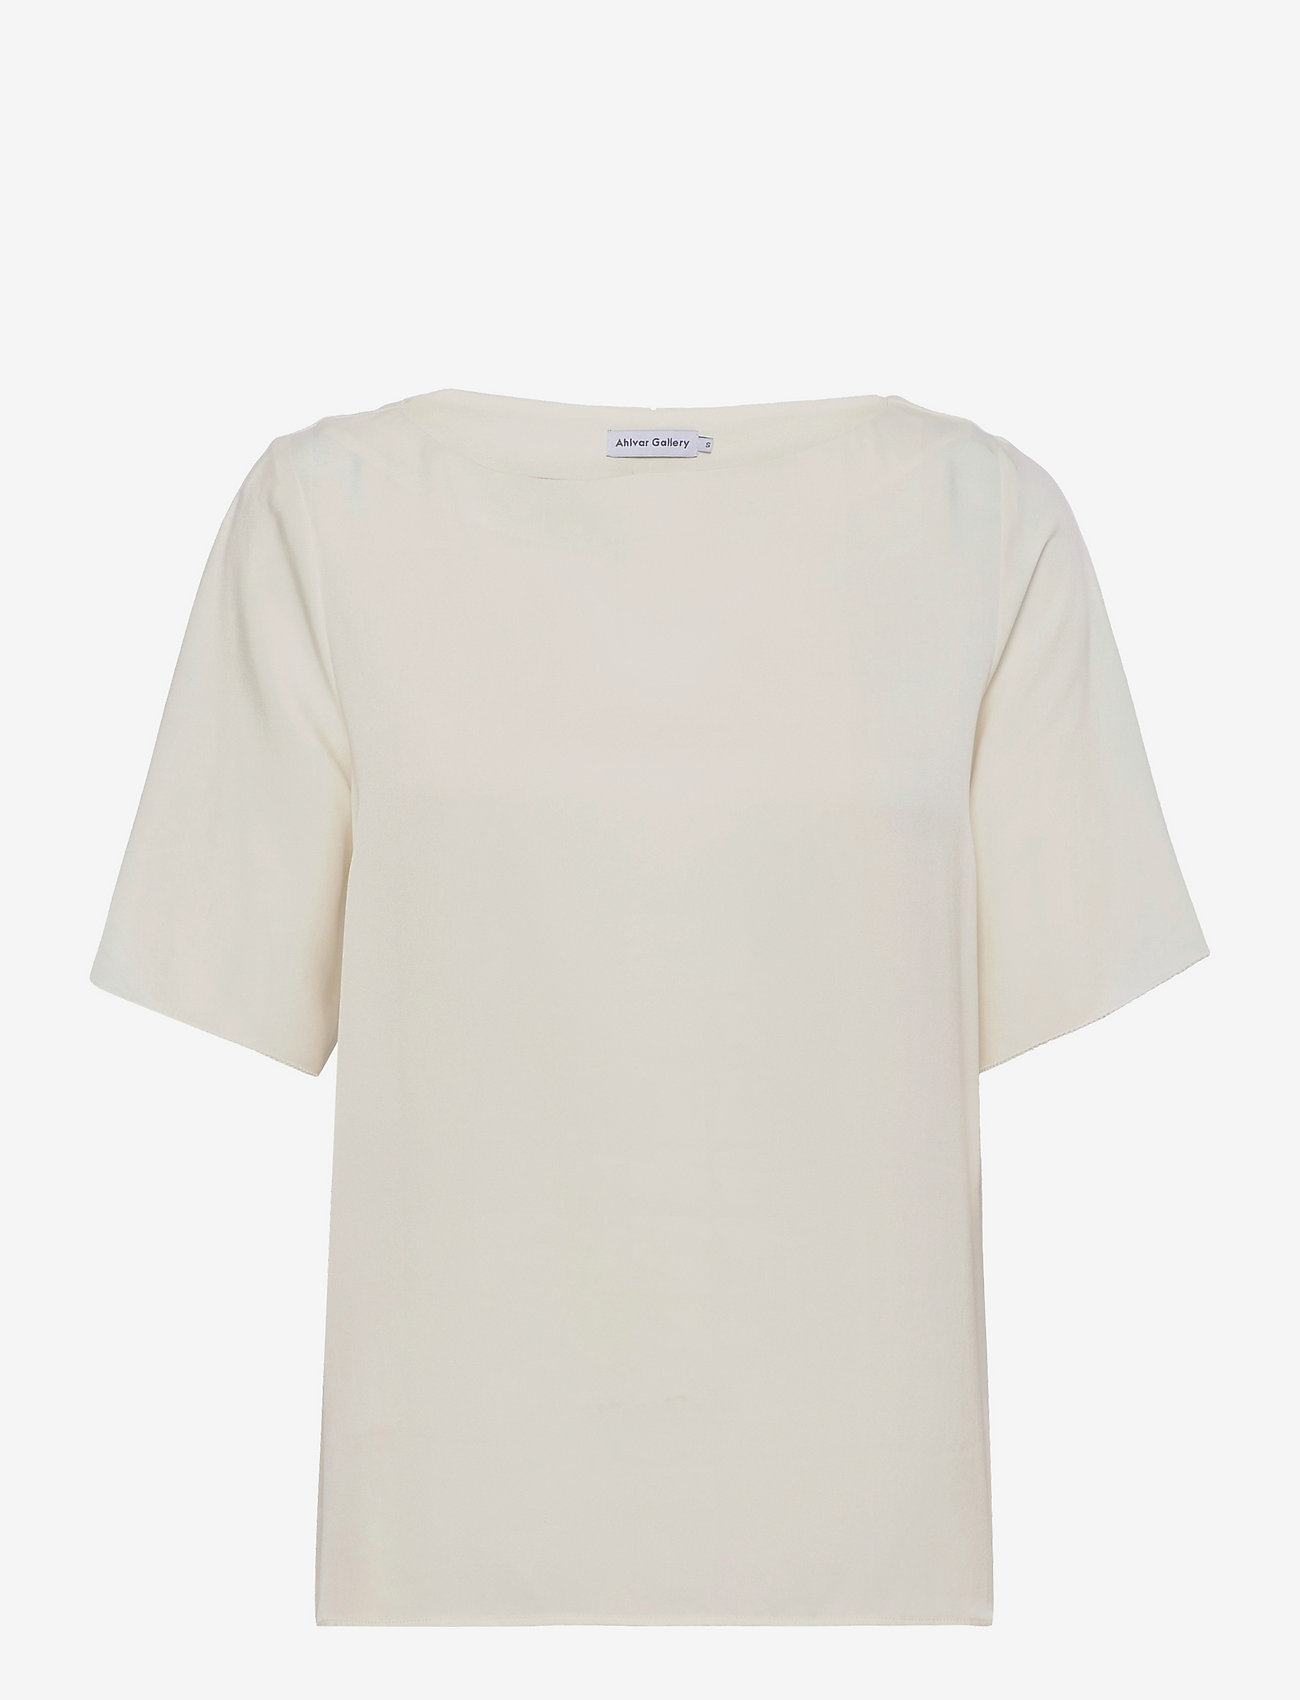 Ahlvar Gallery - Yoli blouse - short-sleeved blouses - off-white - 0